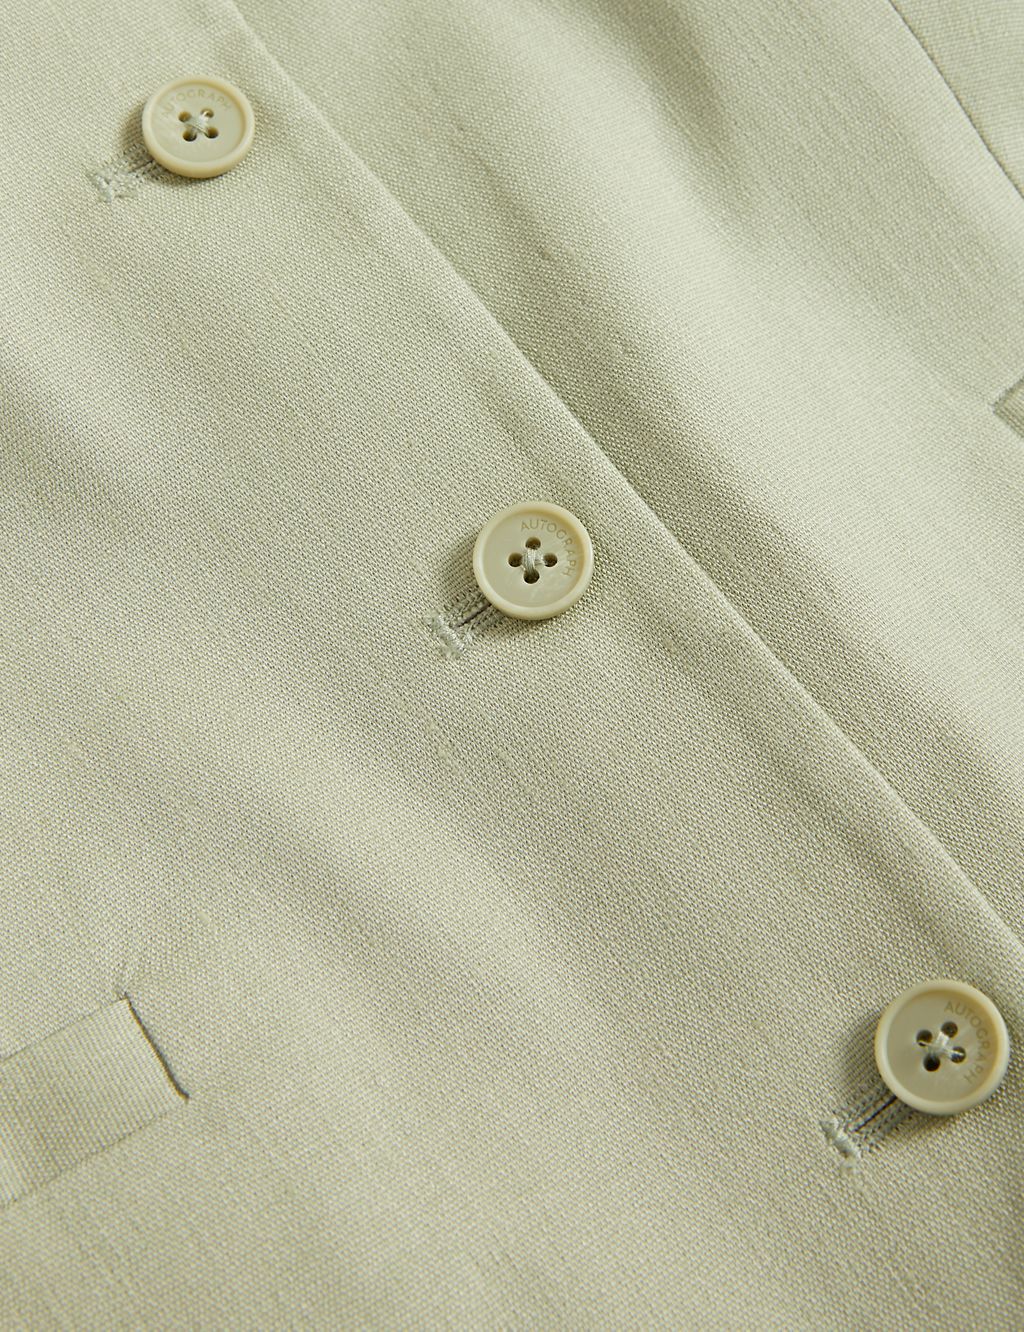 Linen blend waistcoat